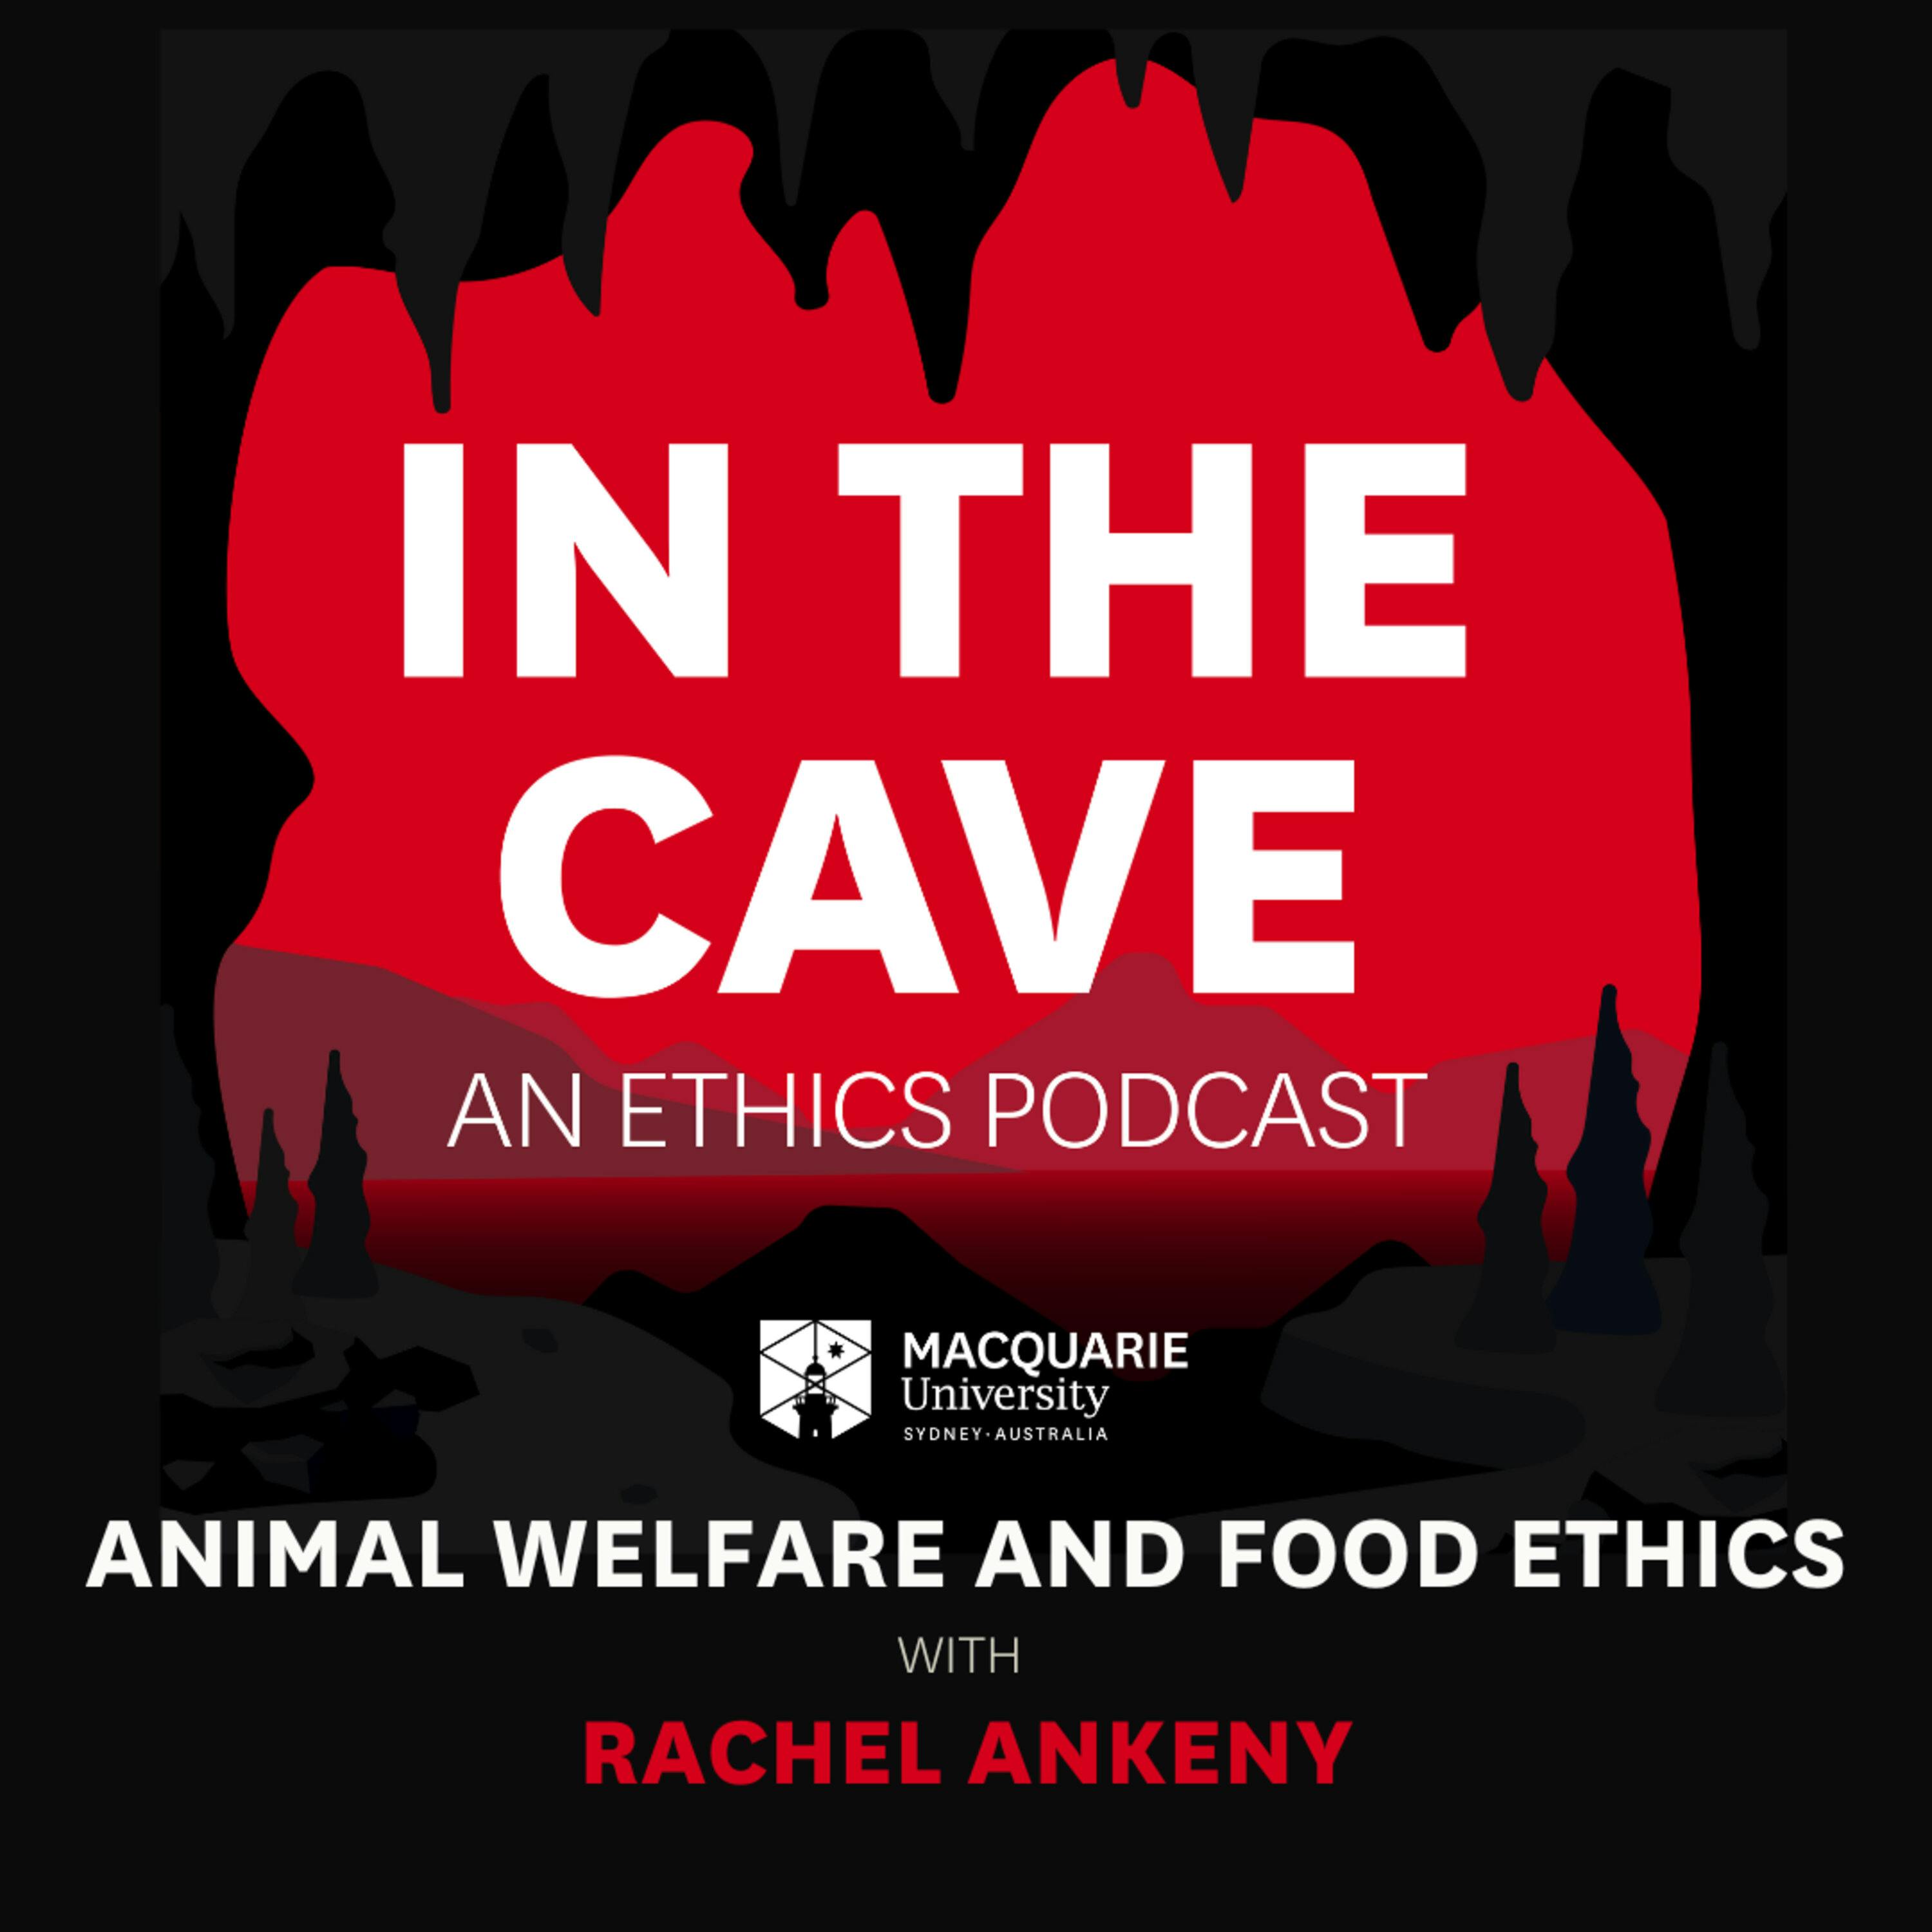 Animal welfare and food ethics with Rachel Ankeny